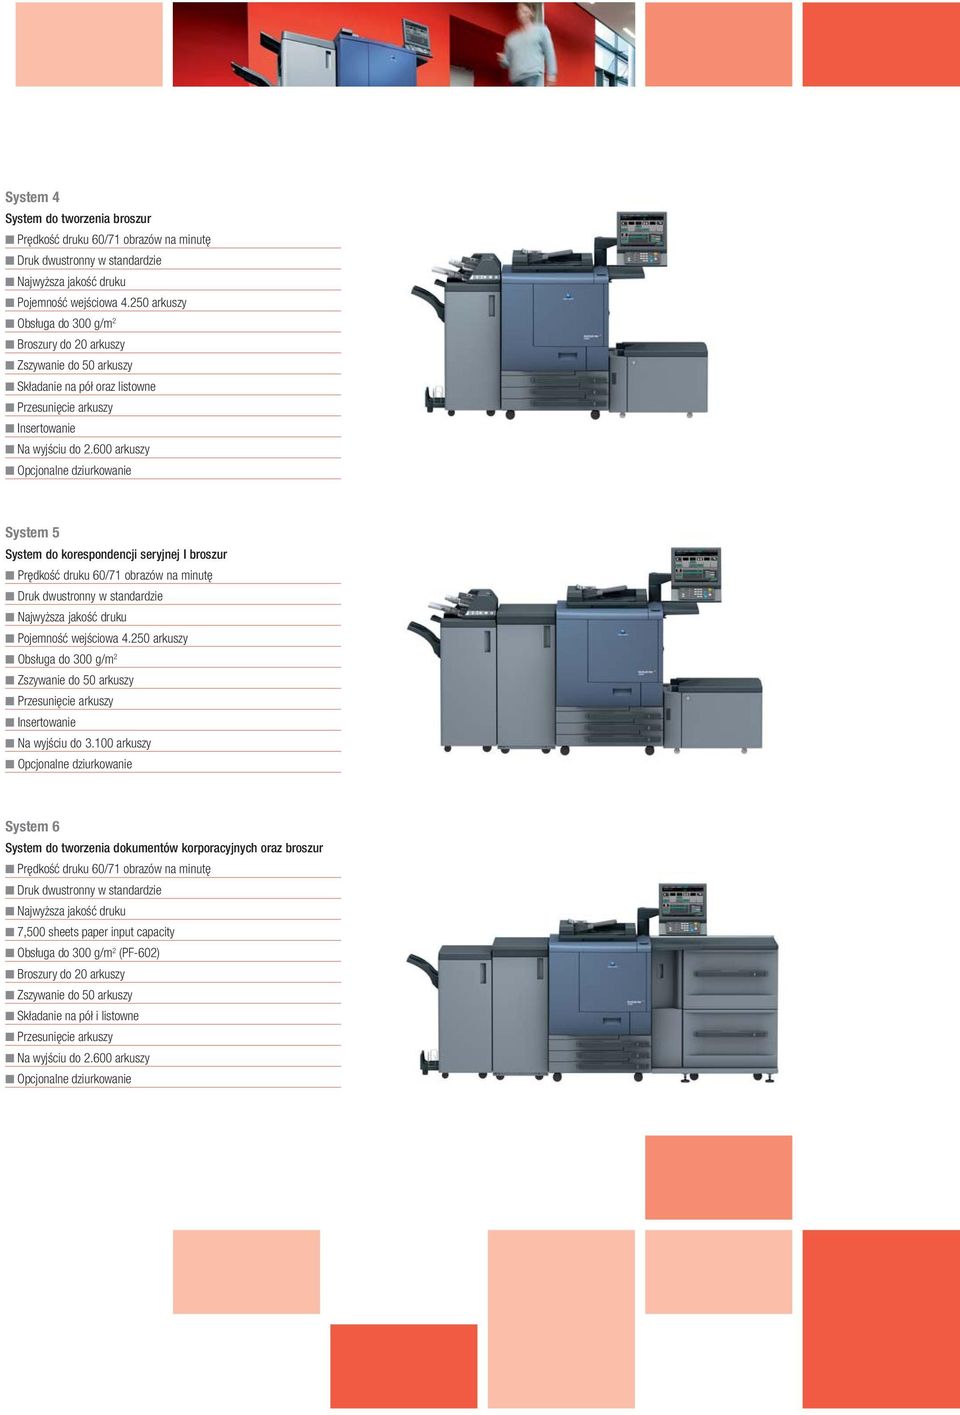 600 arkuszy Opcjonalne dziurkowanie System 5 System do korespondencji seryjnej I broszur Prędkość druku 60/71 obrazów na minutę Druk dwustronny w standardzie Najwyższa jakość druku Pojemność